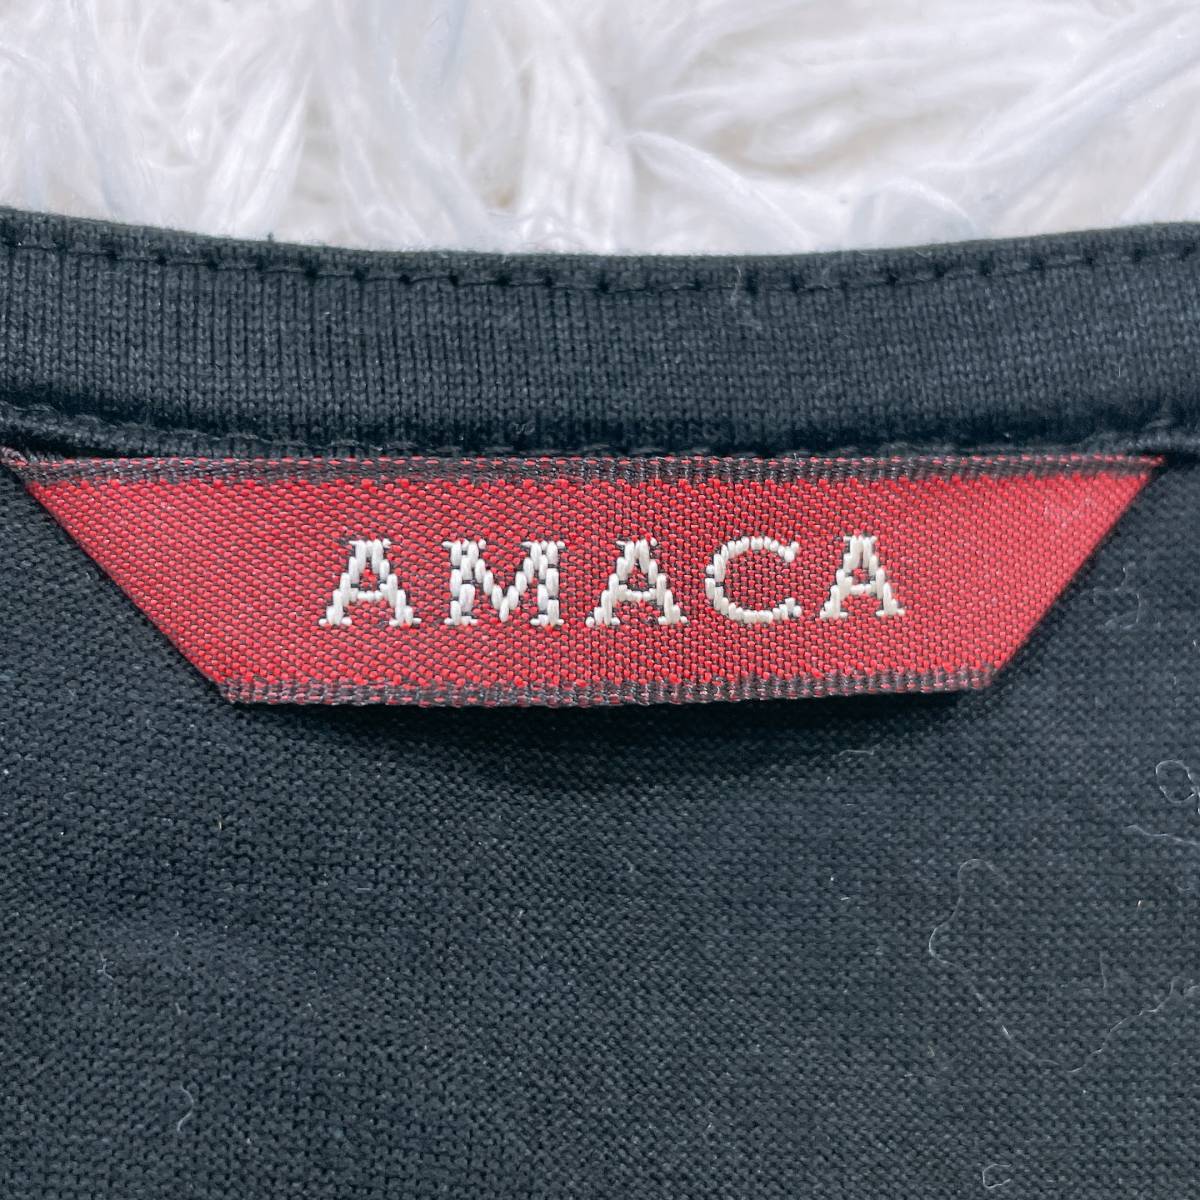 レディース40 M AMACA カットソー ブラック 黒 良品 半袖 ビジュー カジュアル シンプル 無地 かっこいい アマカ 【25657】